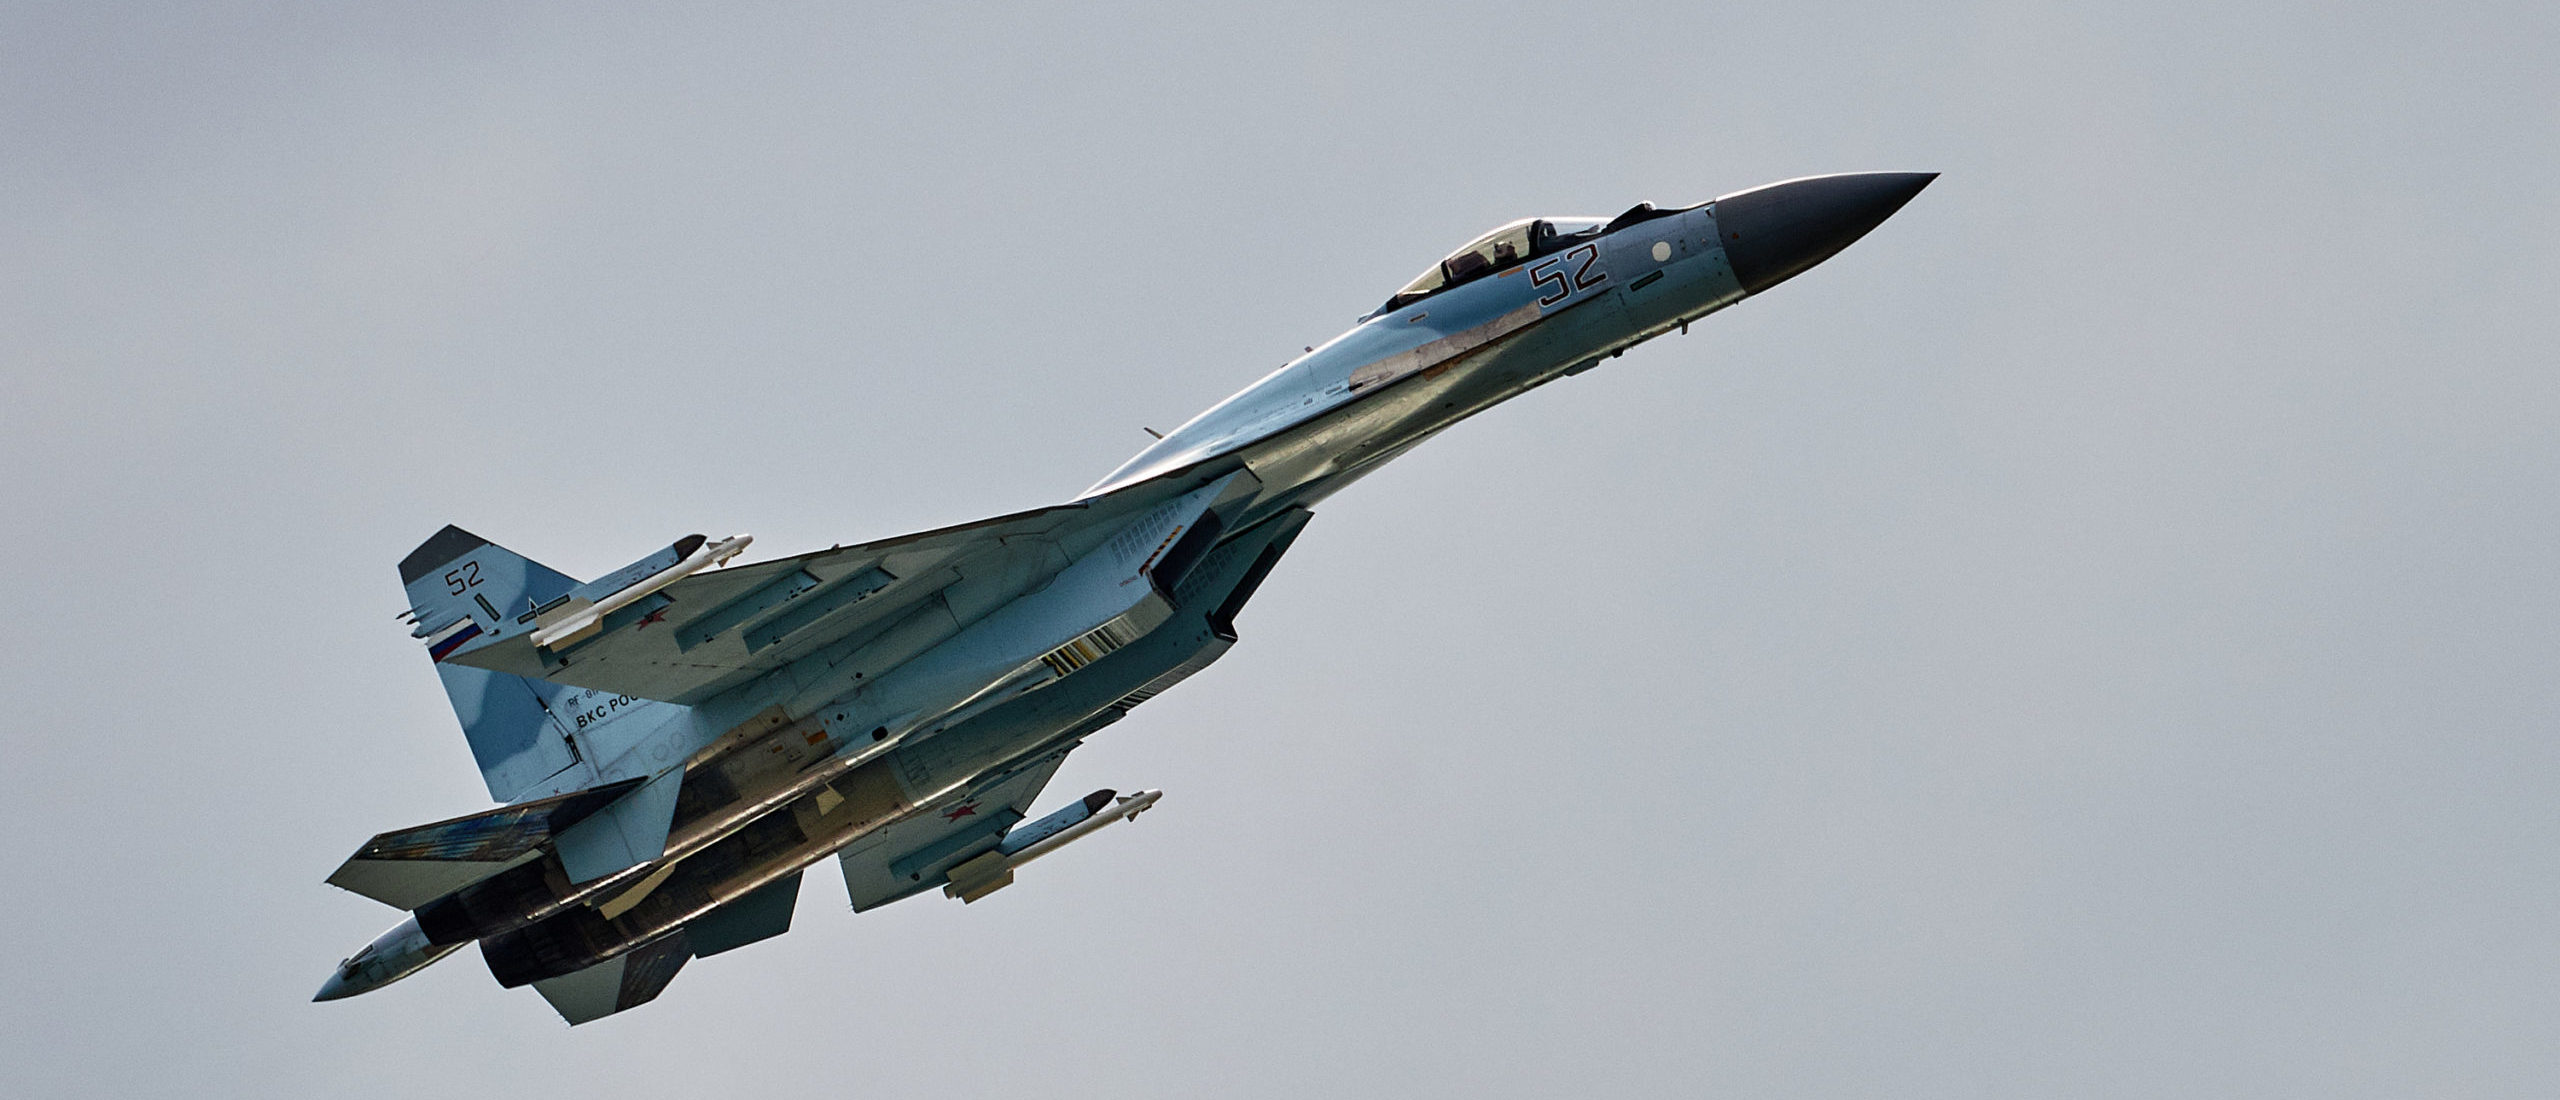 FACT CHECK: Image Alleges Ukrainian Forces Struck Su-57 Decoy